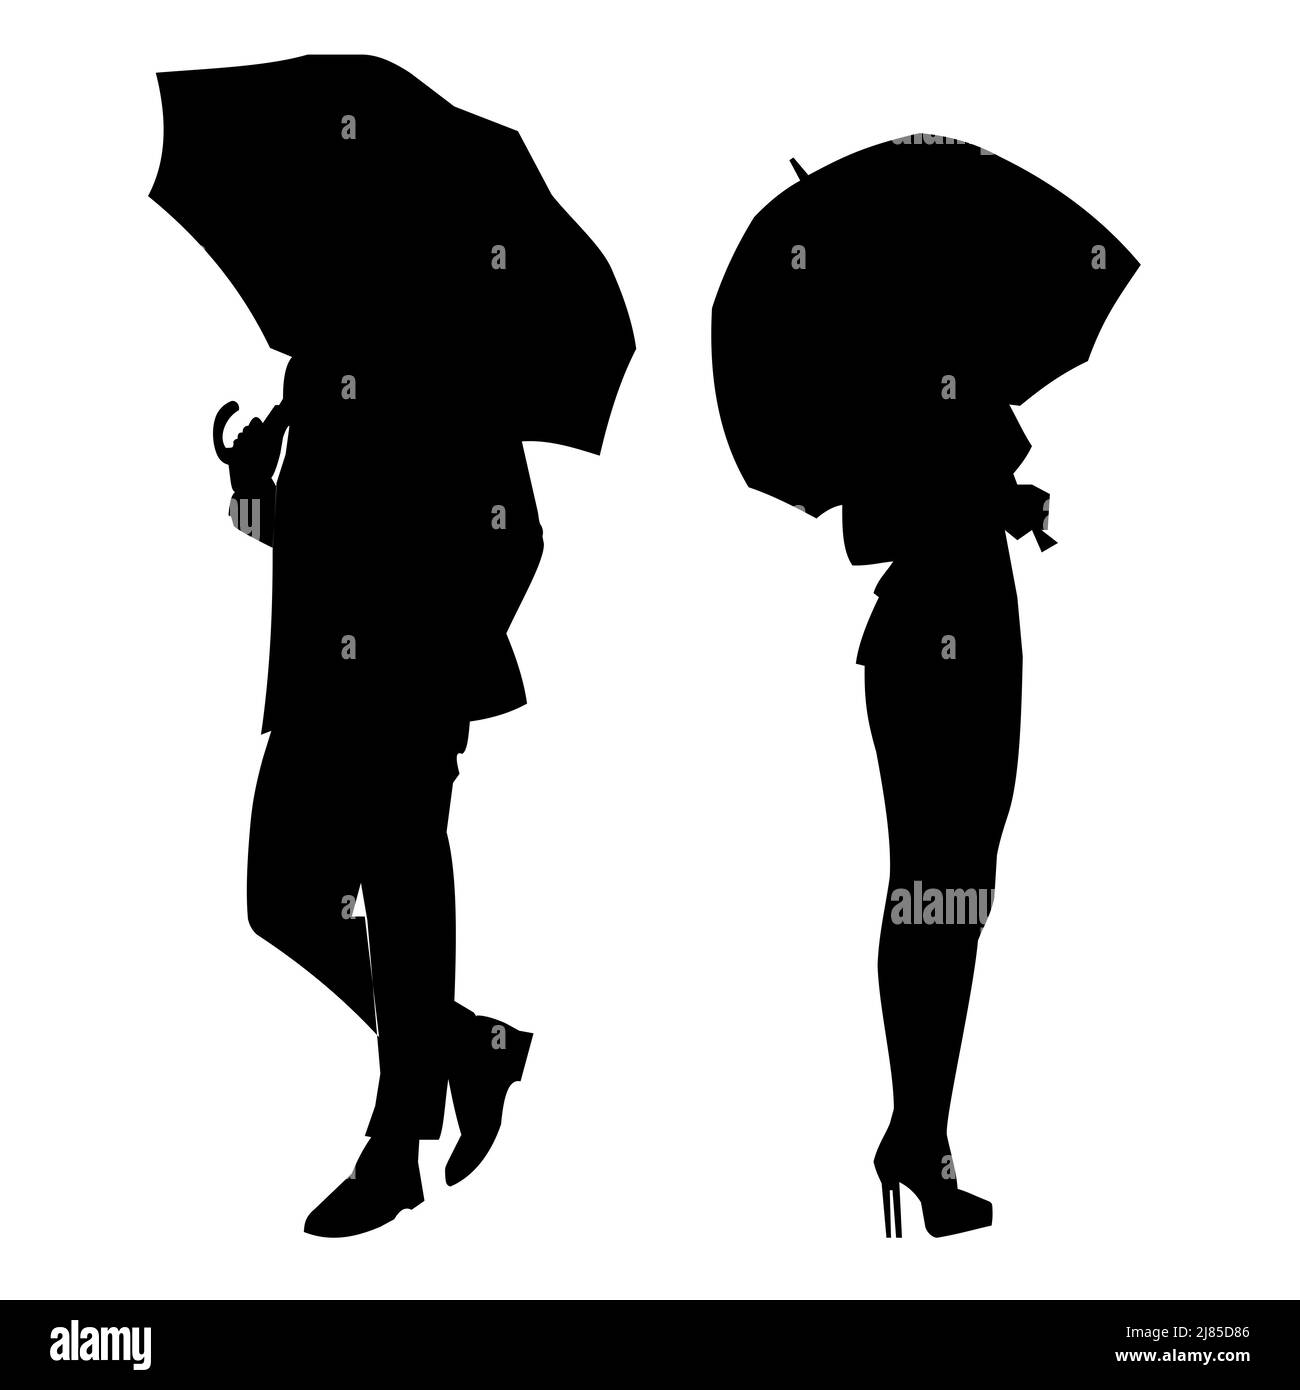 Schwarze grafische Silhouetten eines Mannes und einer Frau mit Regenschirmen, Grafiken, Umrisszeichnung Stockfoto